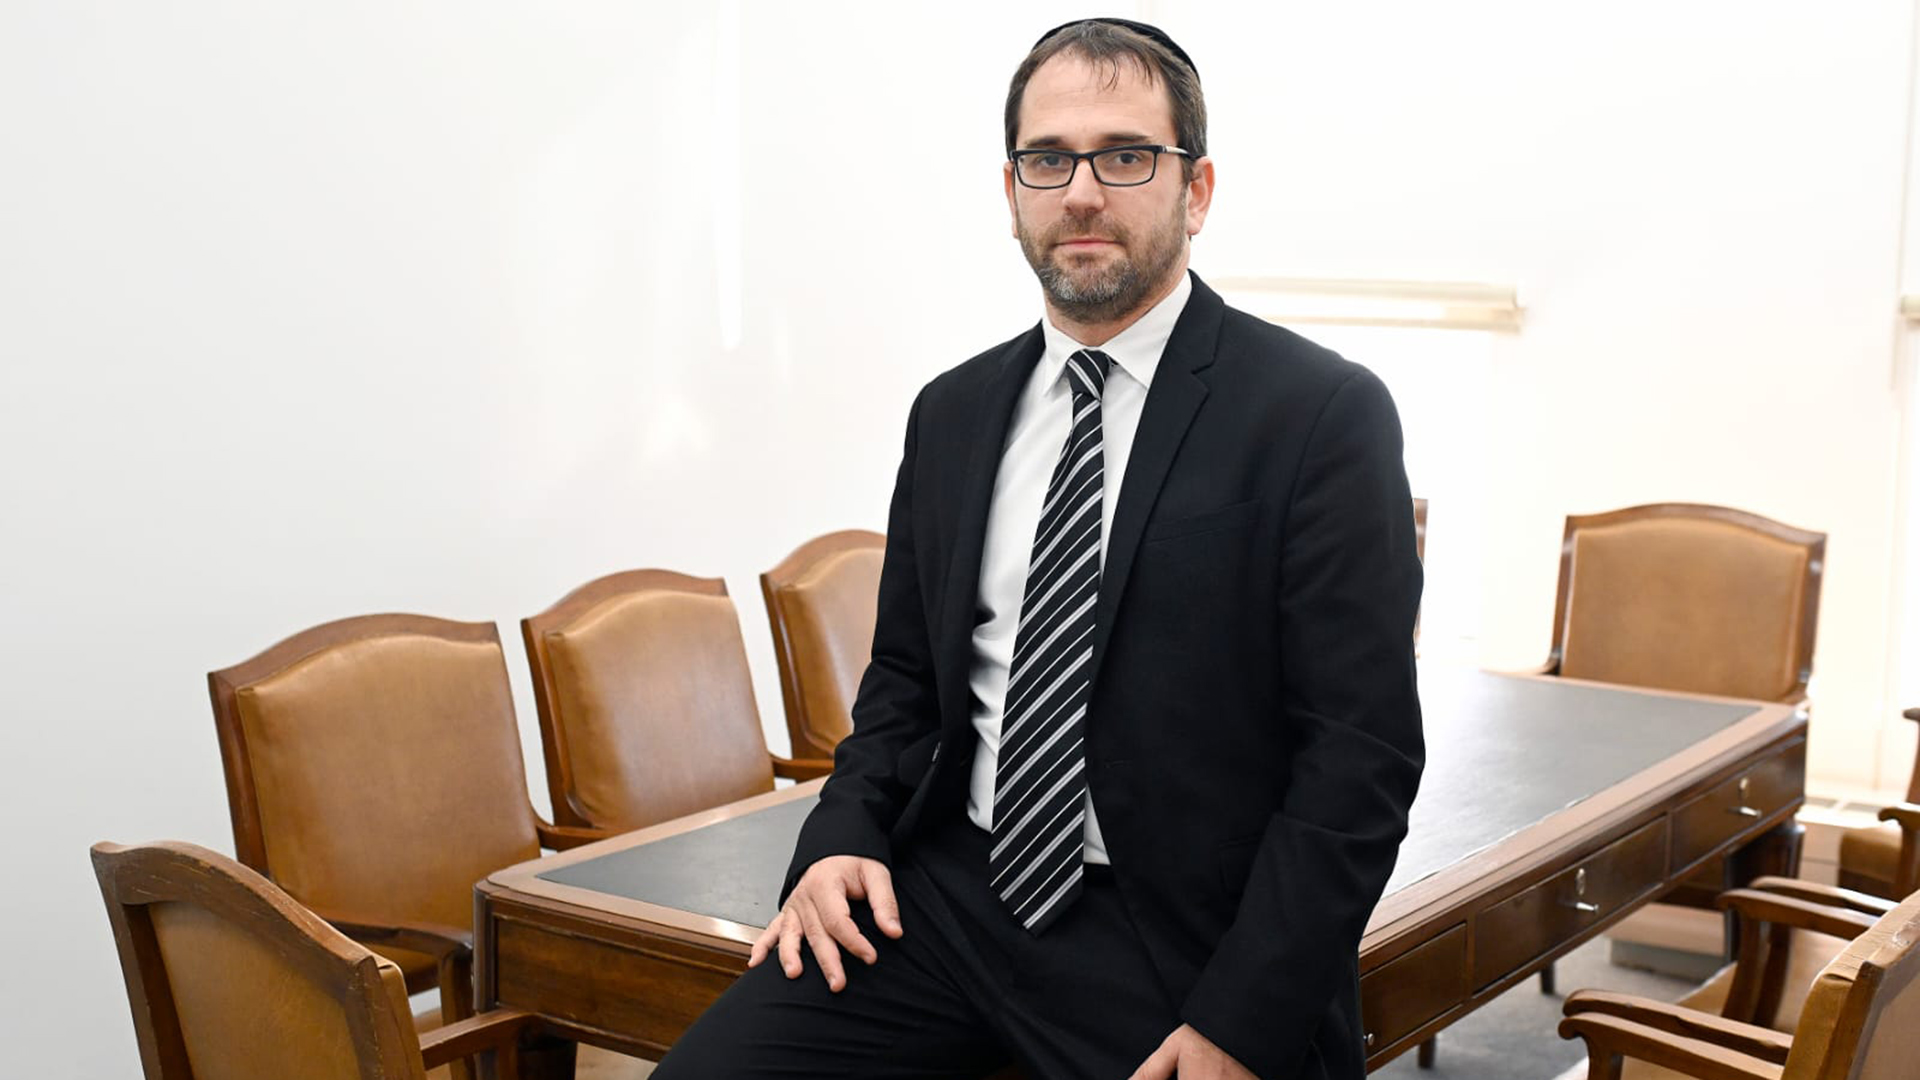 Linetzky tiene 42 años, es abogado y pertenece a la misma agrupación que hoy conduce la mutual judía